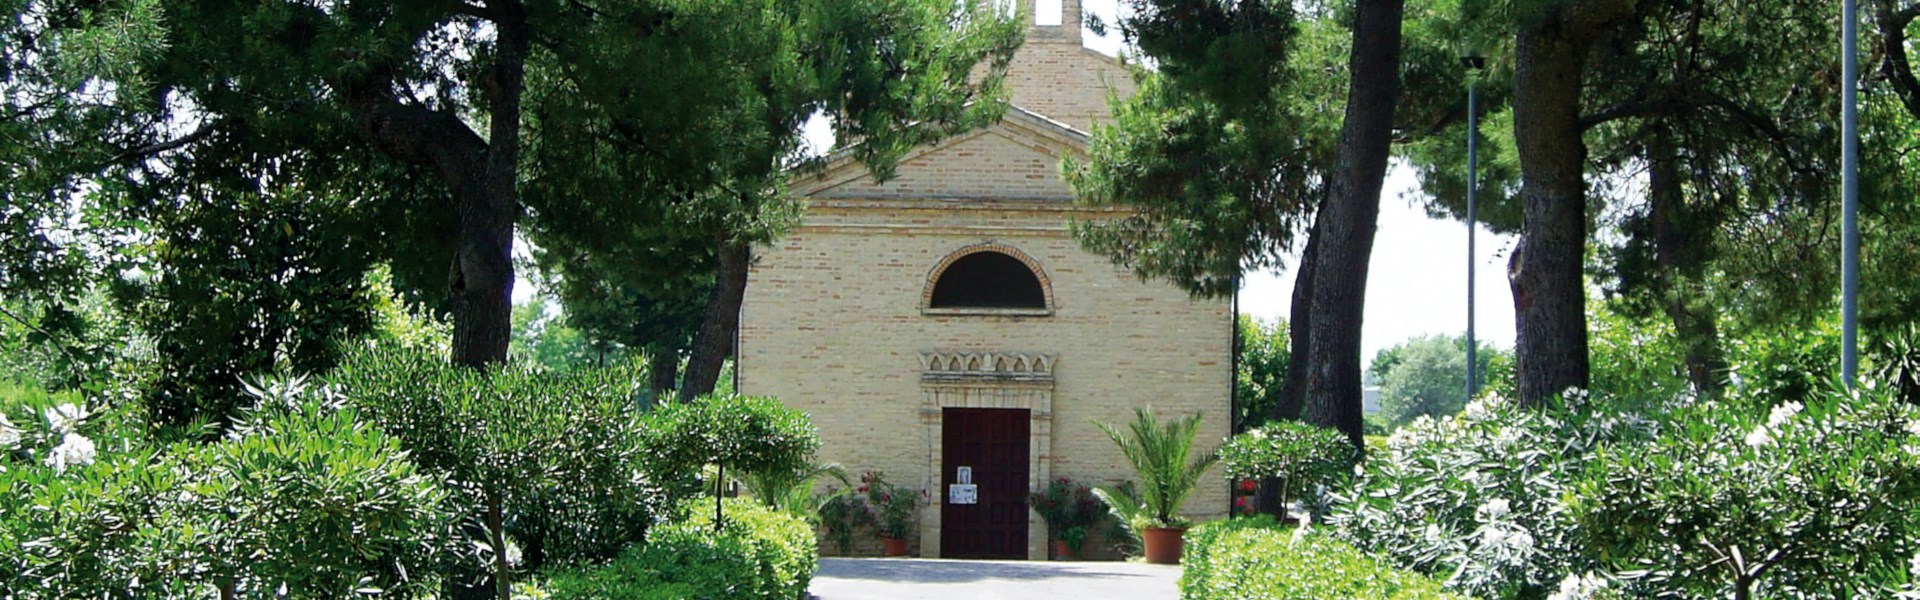 Civitanova Marche - Santuario di S. Maria Apparente